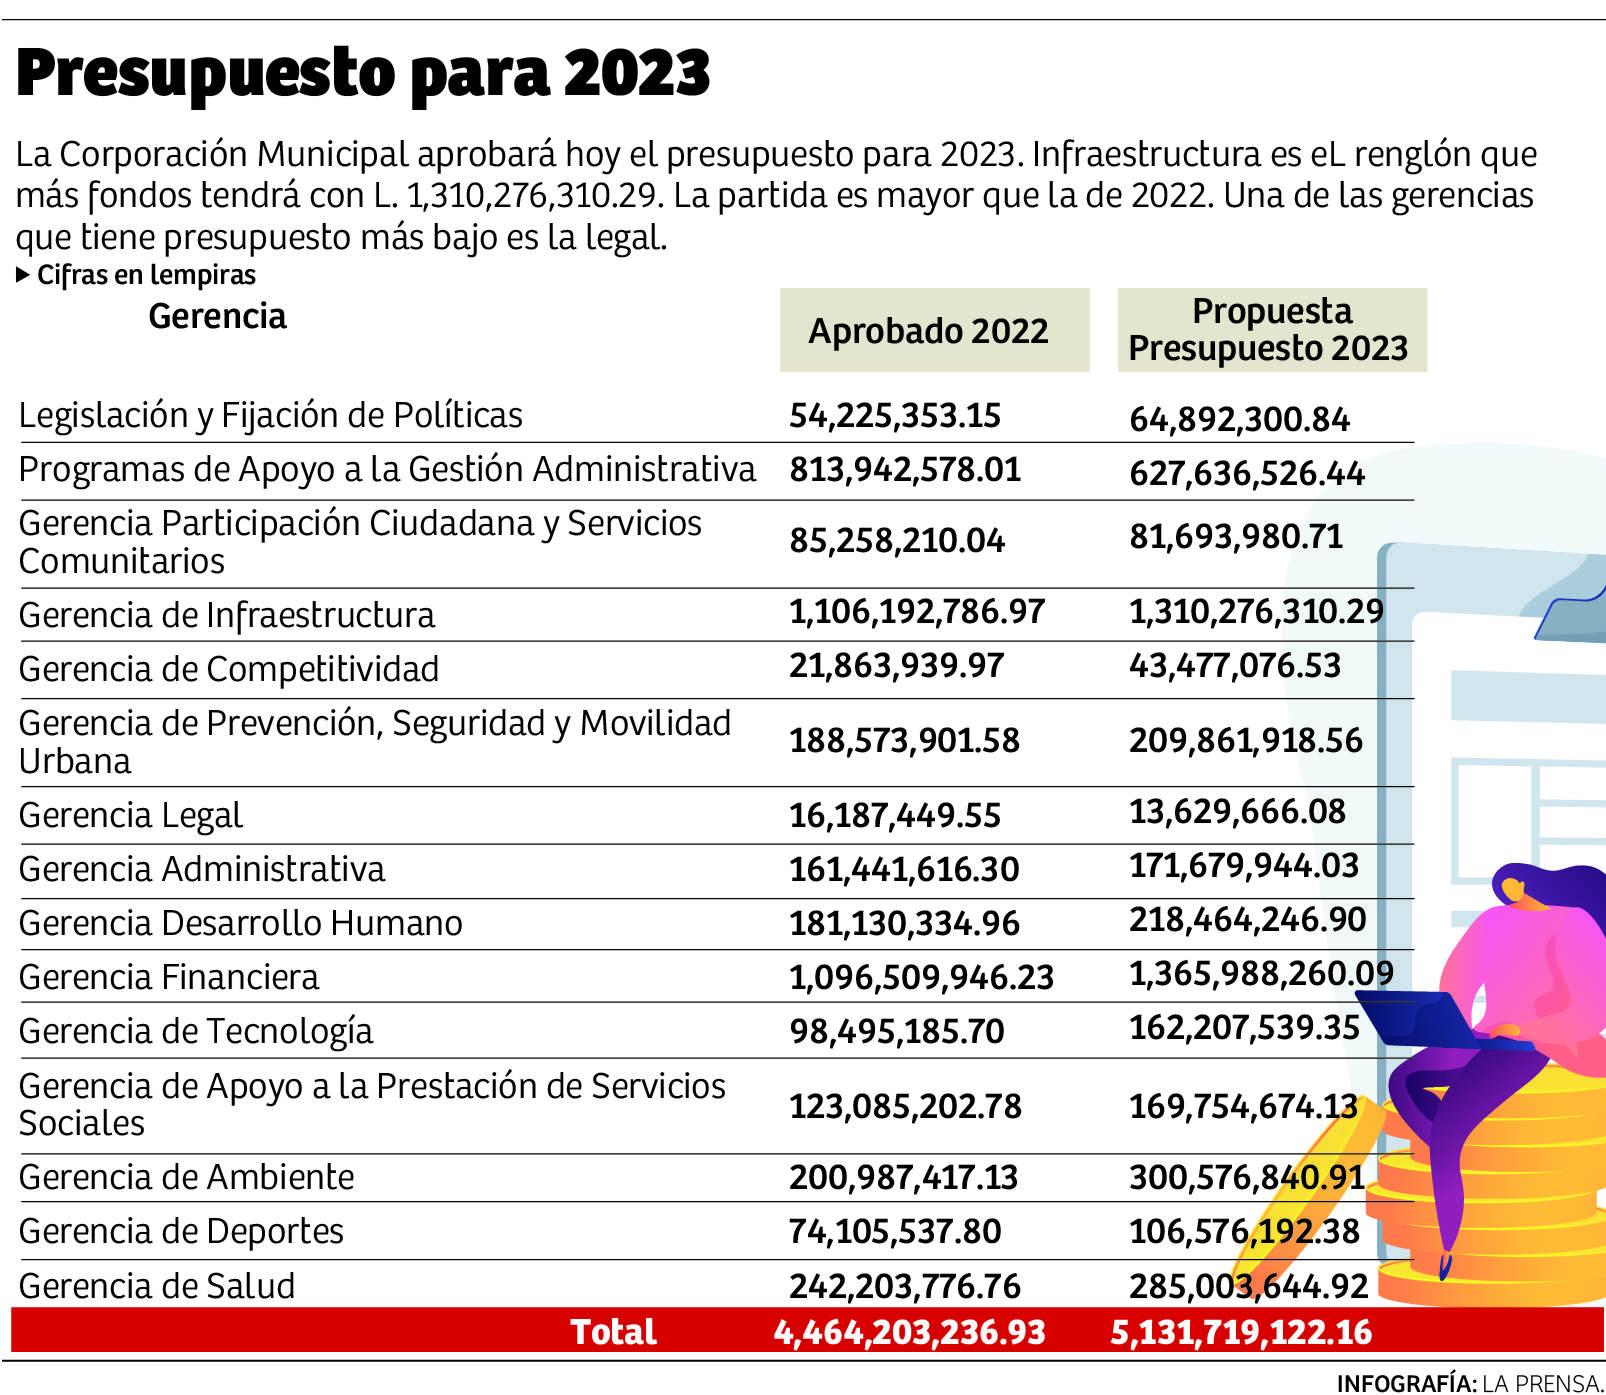 Presupuesto municipal 2023 será de L5,131 millones